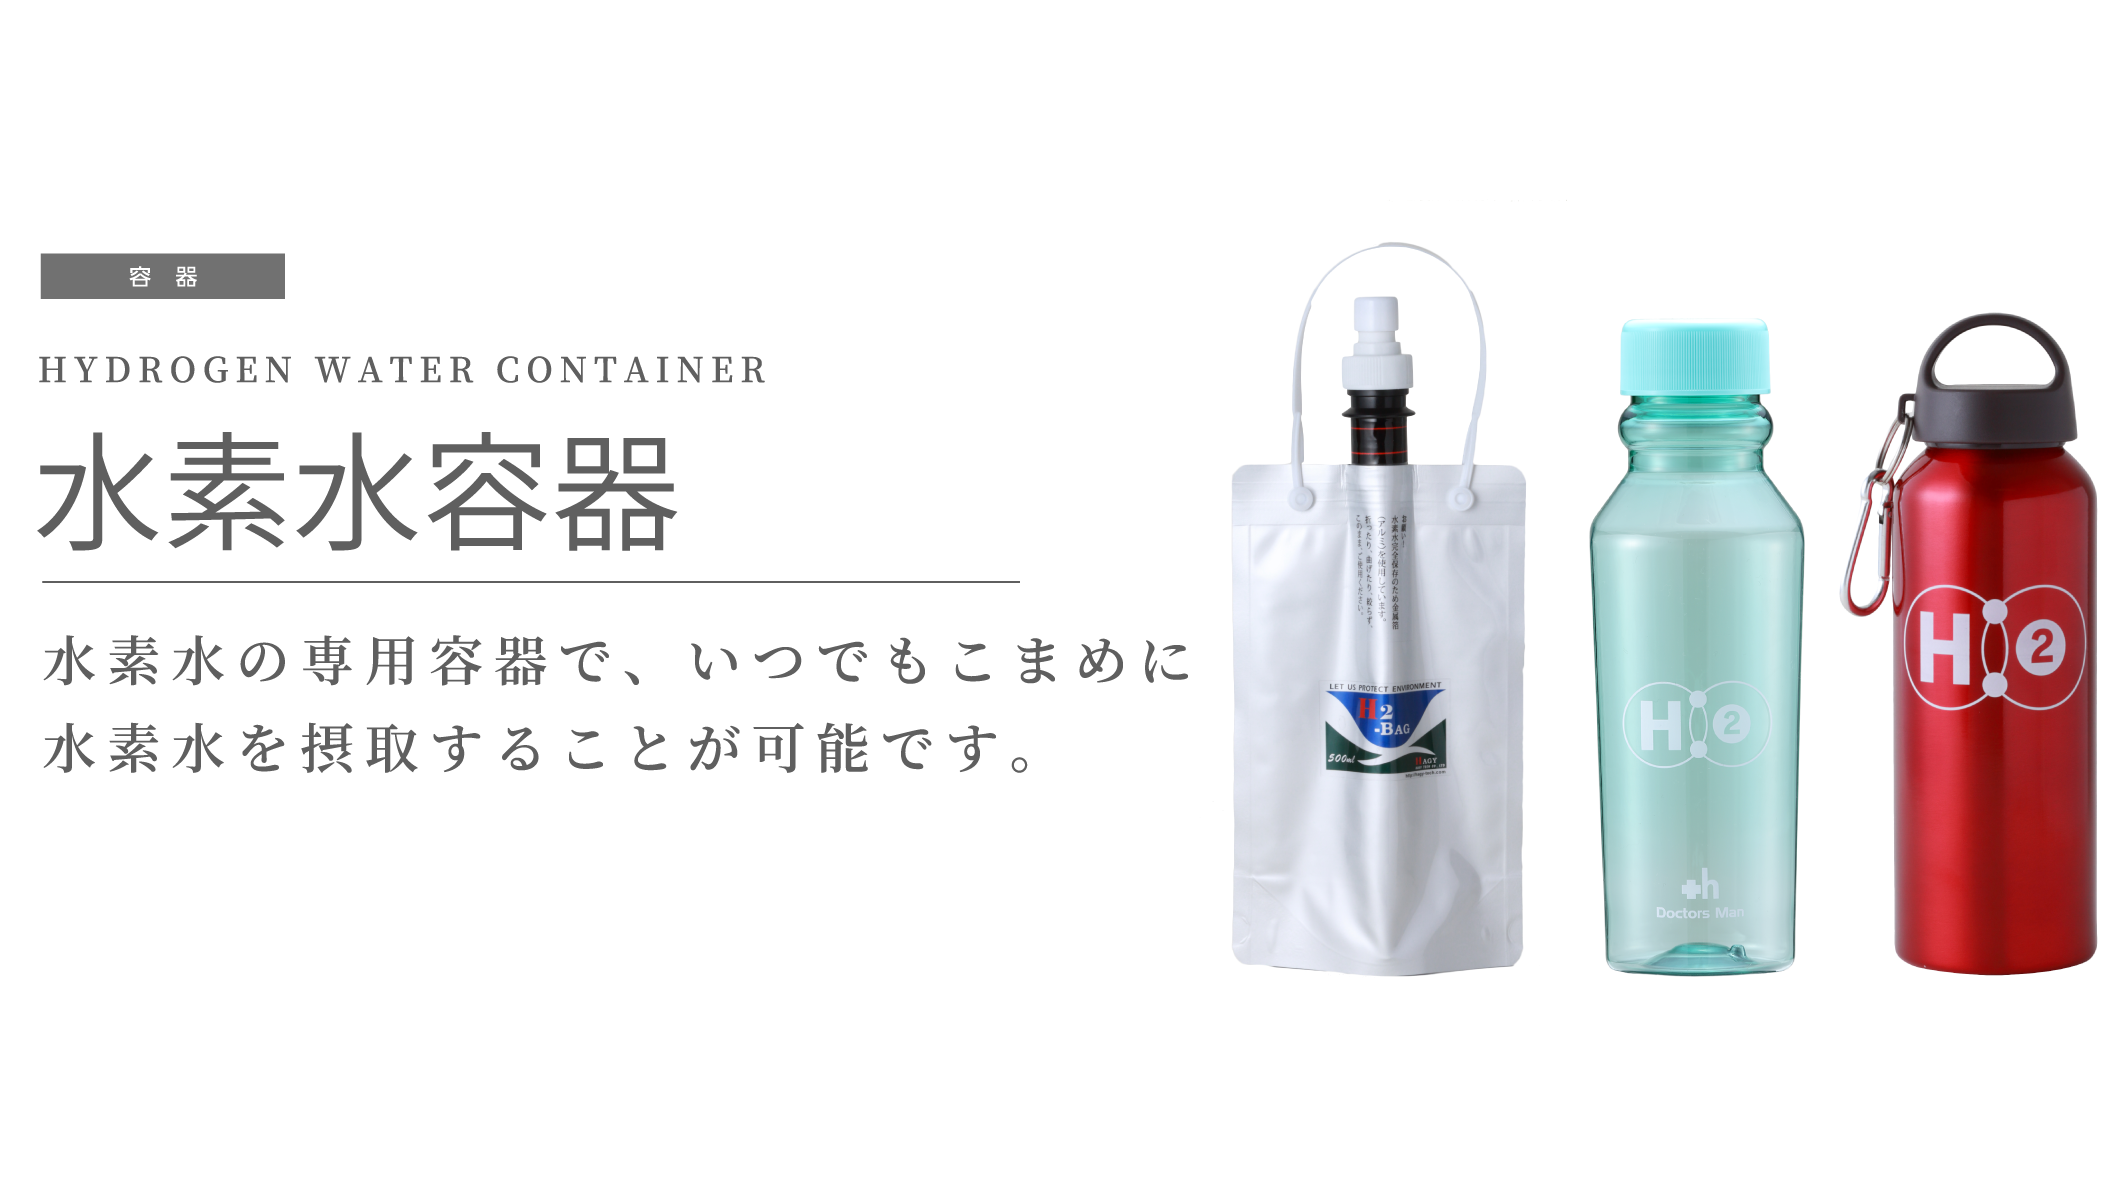 水素水容器 H2-BAG - 株式会社ドクターズ・マン